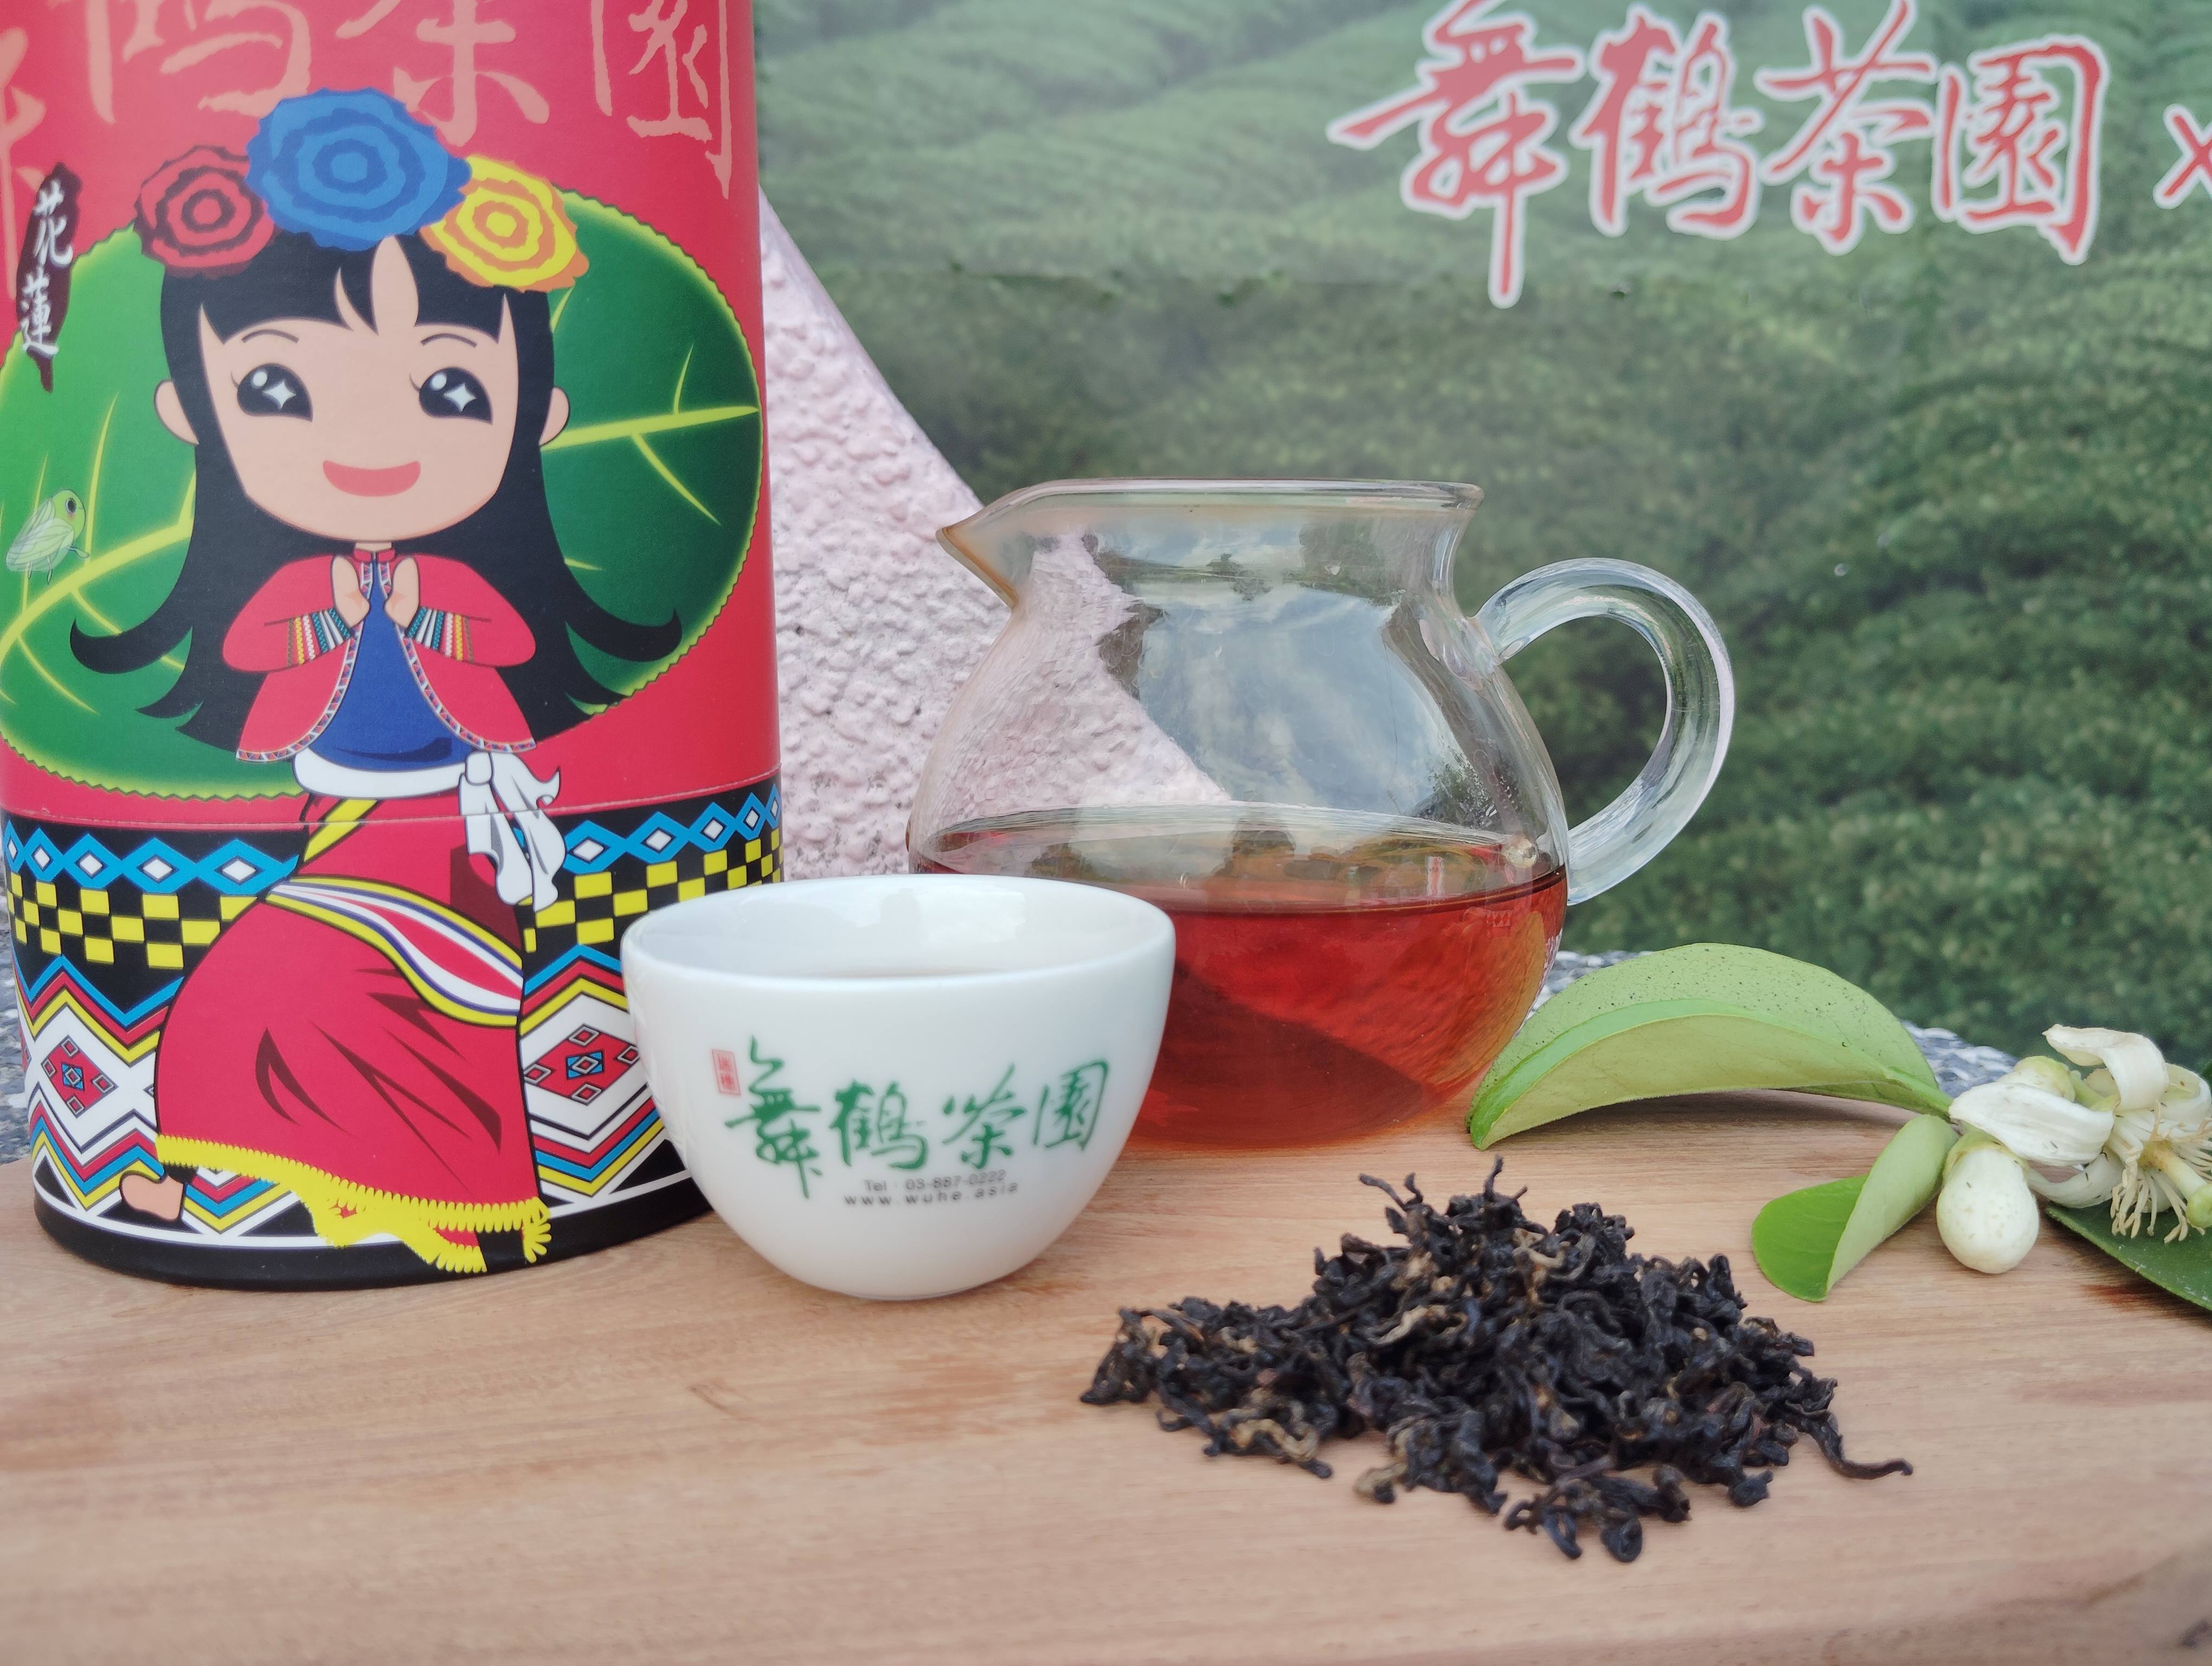 公主柚花蜜香紅茶(150g)